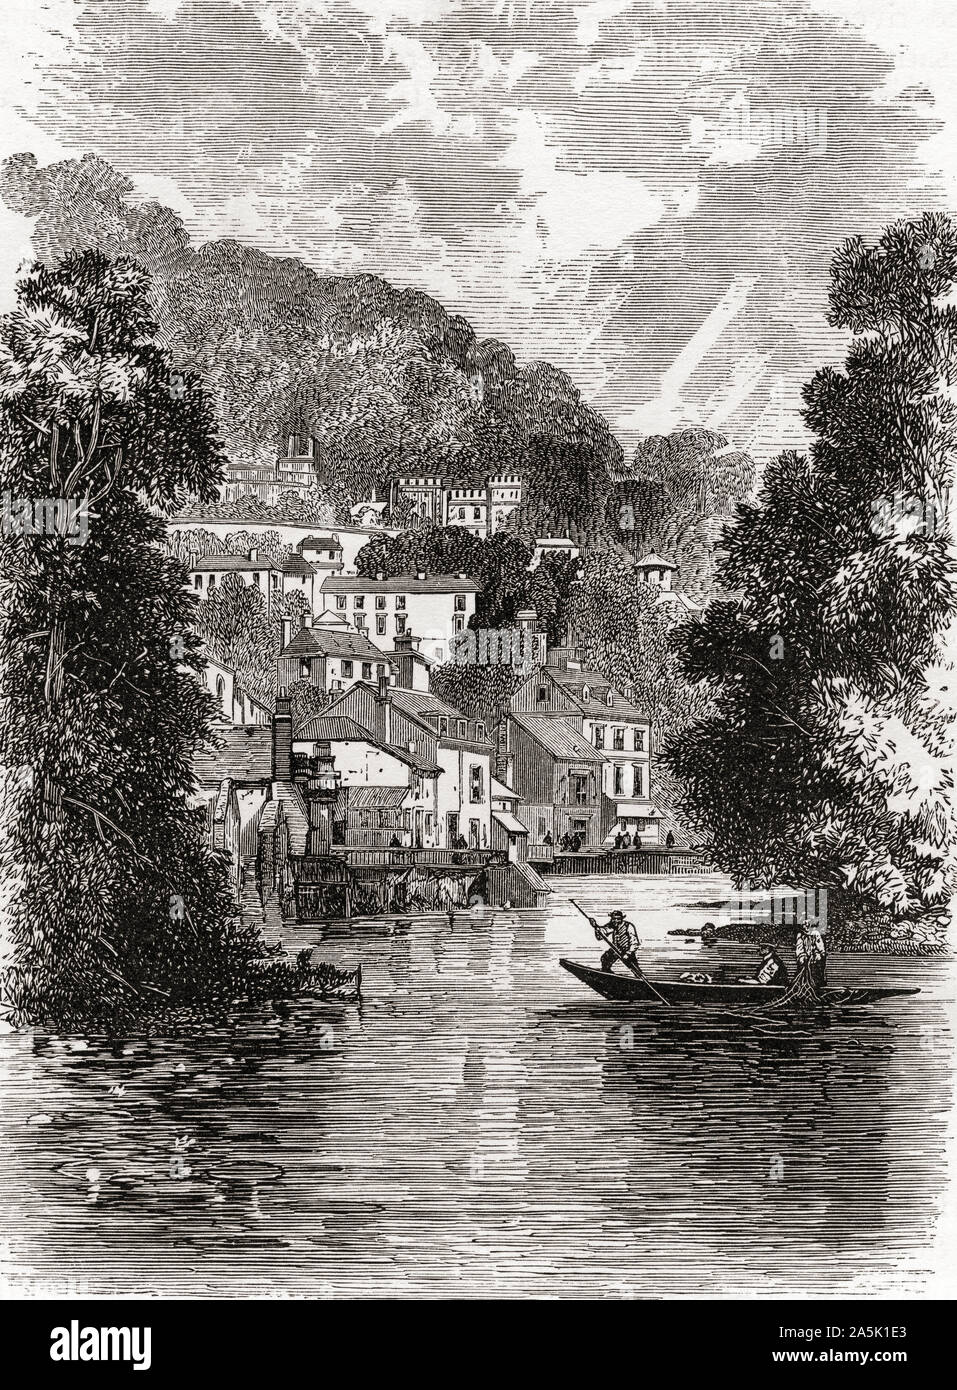 Matlock und den Fluss Derwent, Derbyshire, England, hier im 19. Jahrhundert. Aus dem Englischen Bilder, veröffentlicht 1890. Stockfoto